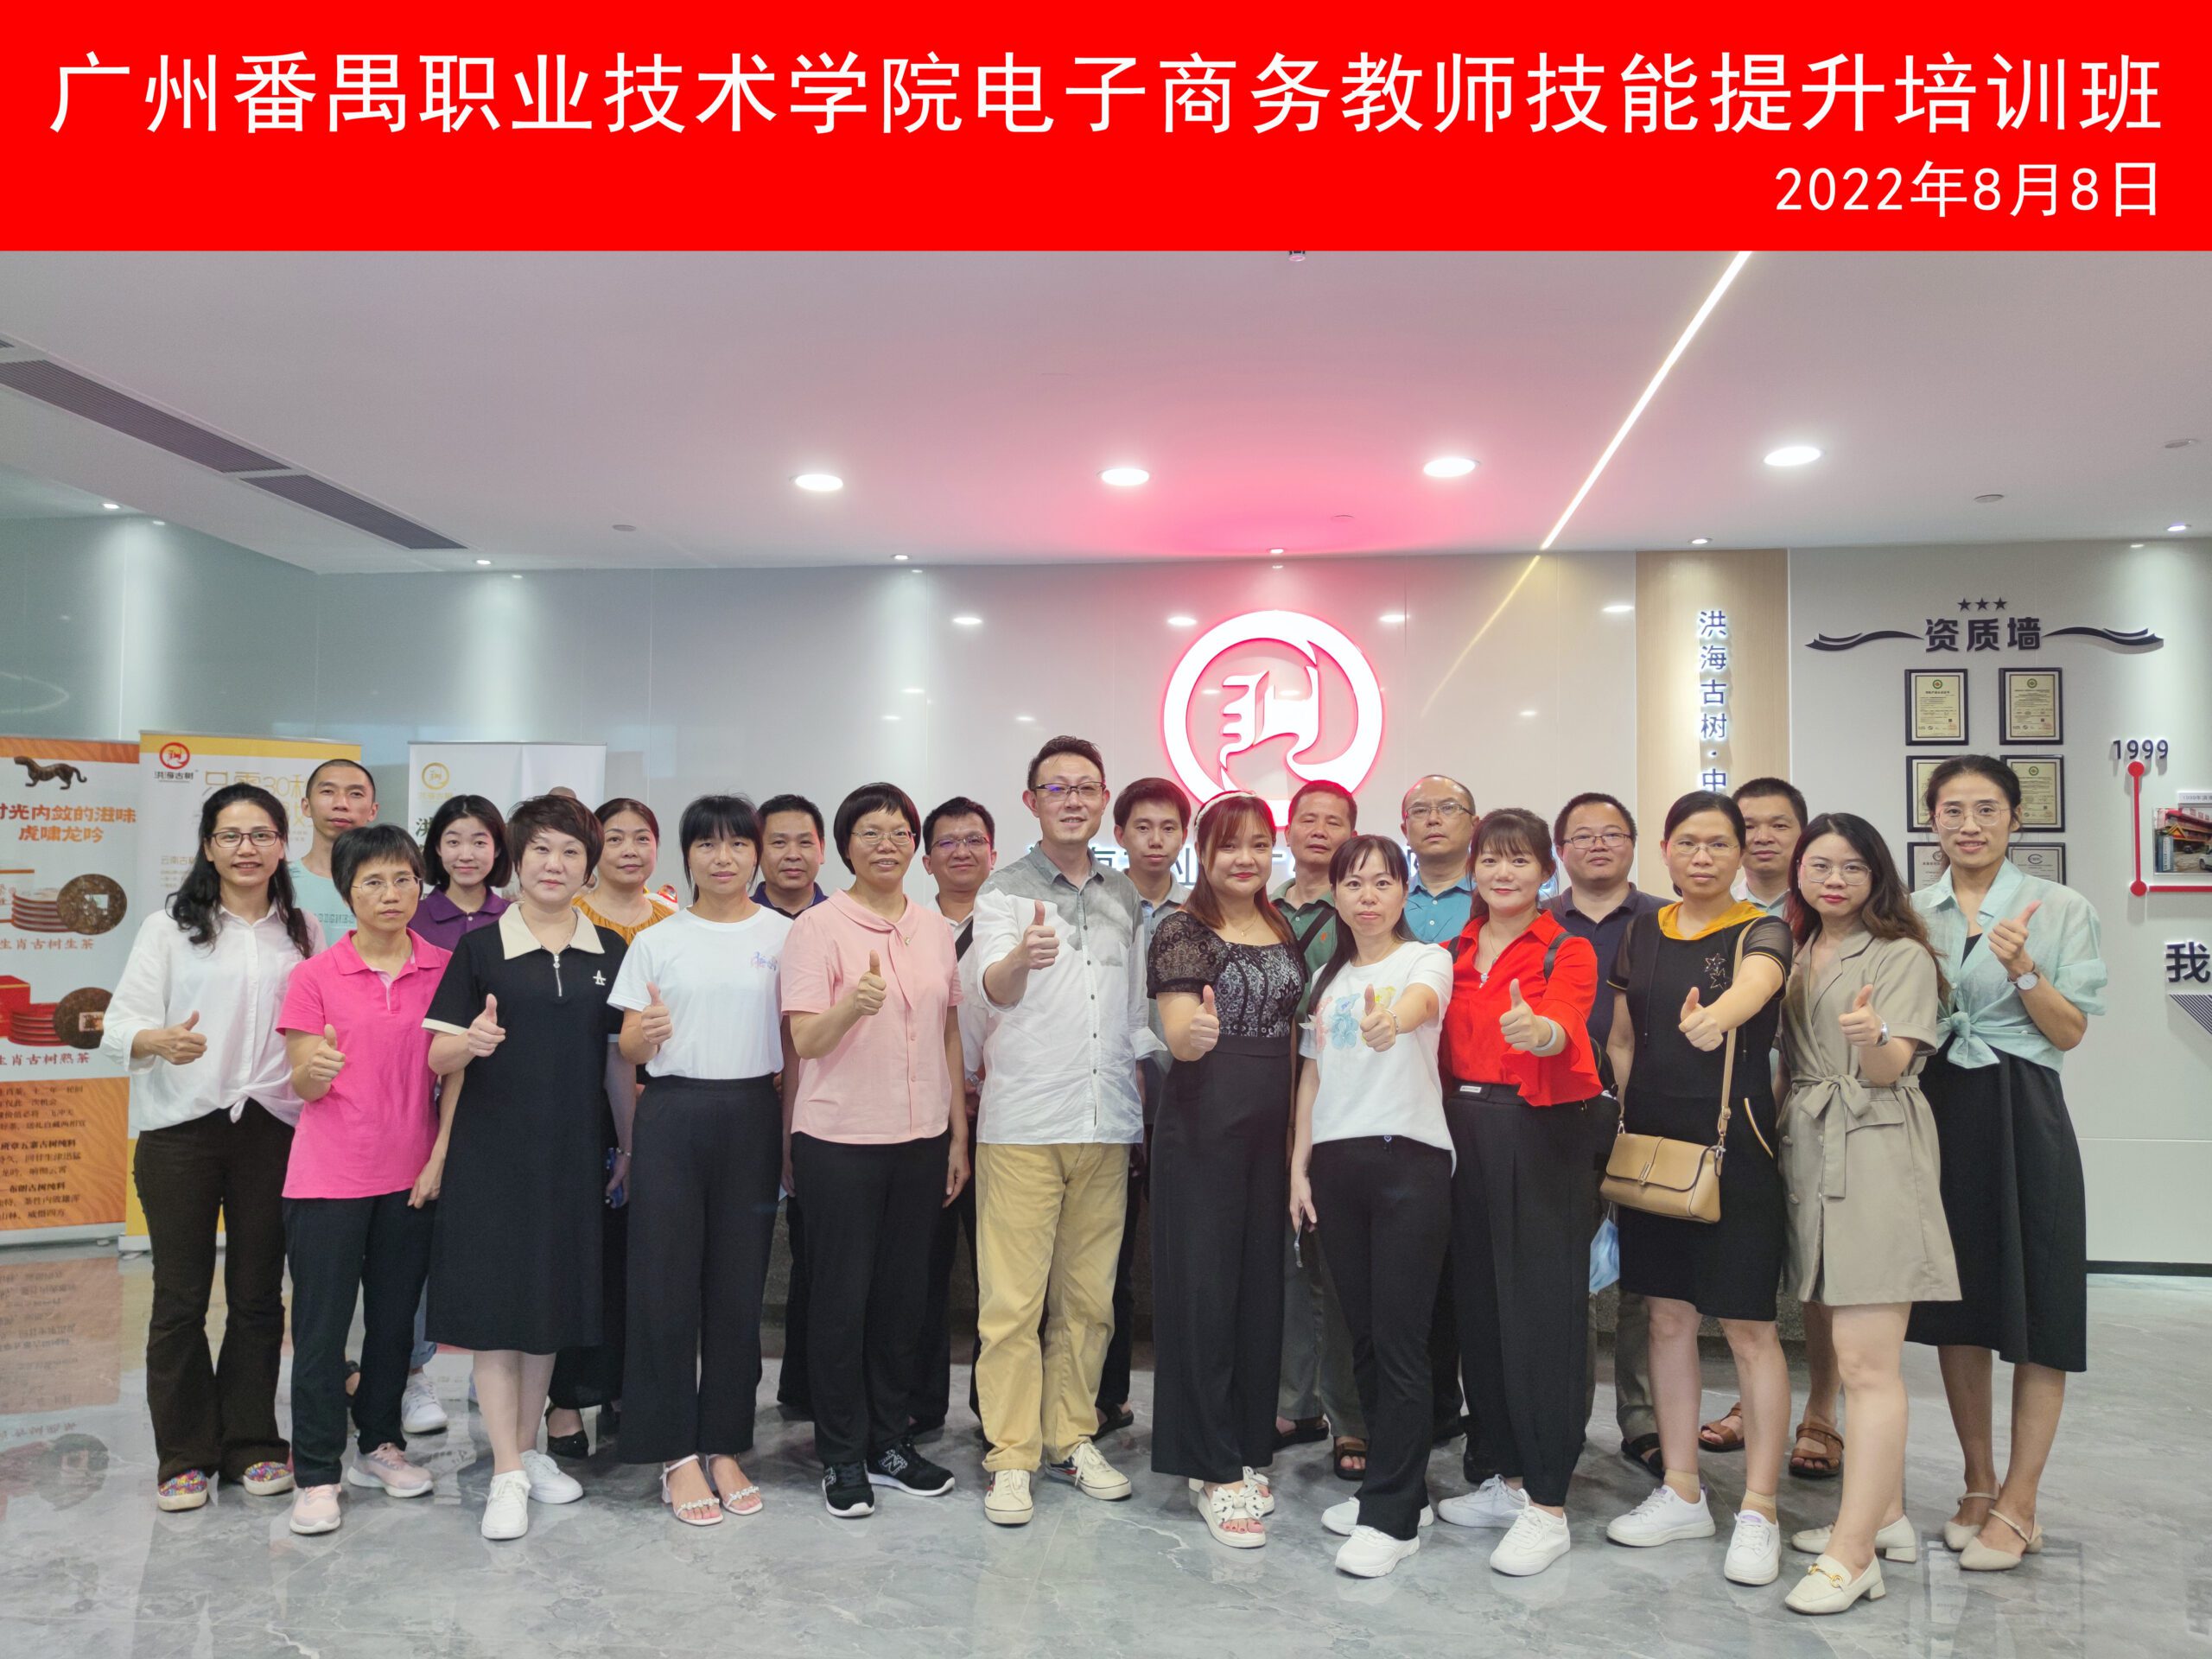 广州番禺职业技术学院电子商务教师技能提升培训班组团参访